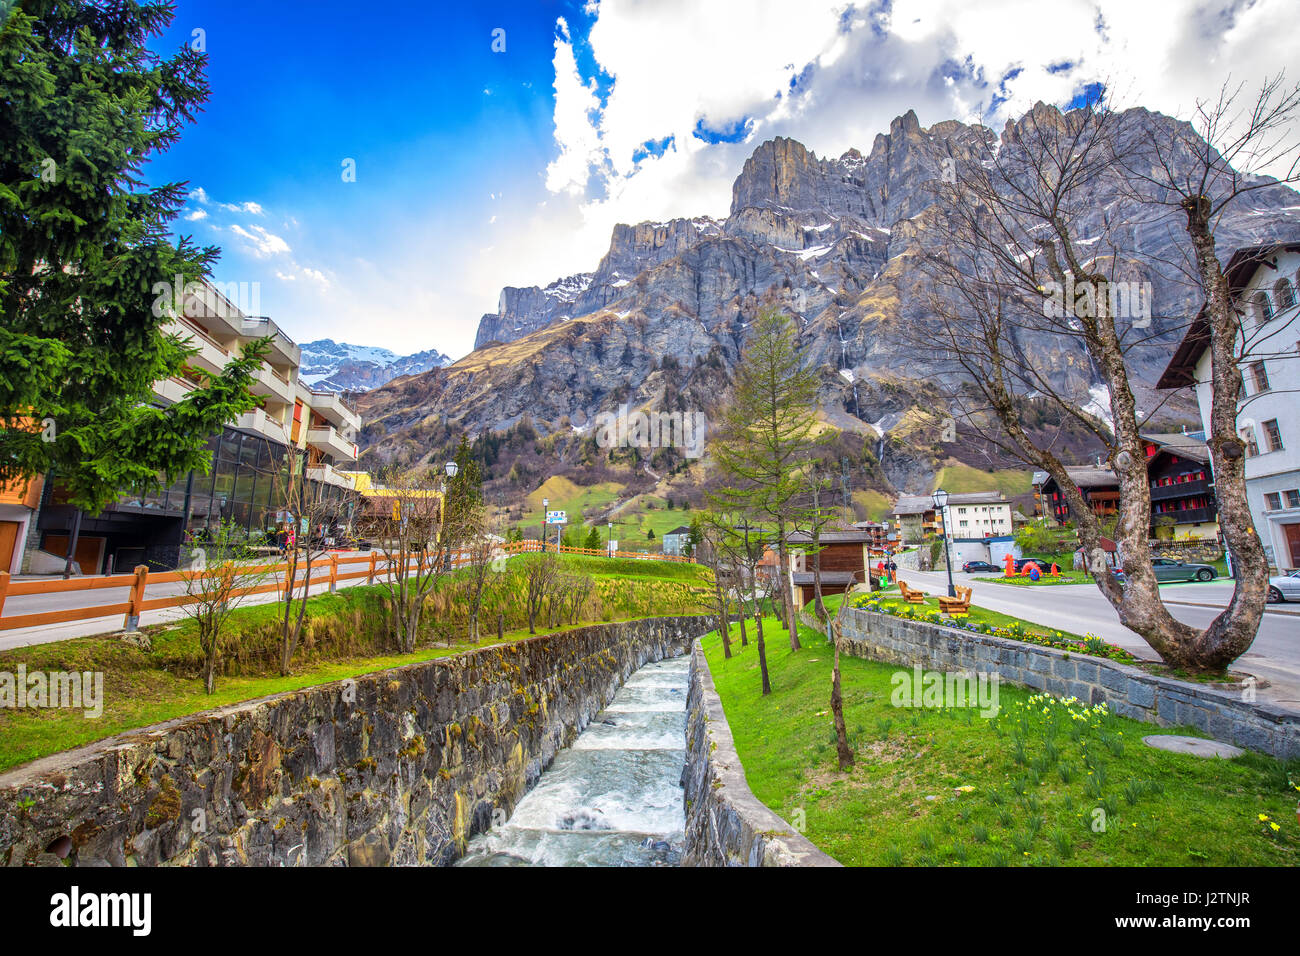 Aldea Leucurbad con impresionantes Alpes Suizos, cantón de Valais, Suiza Foto de stock